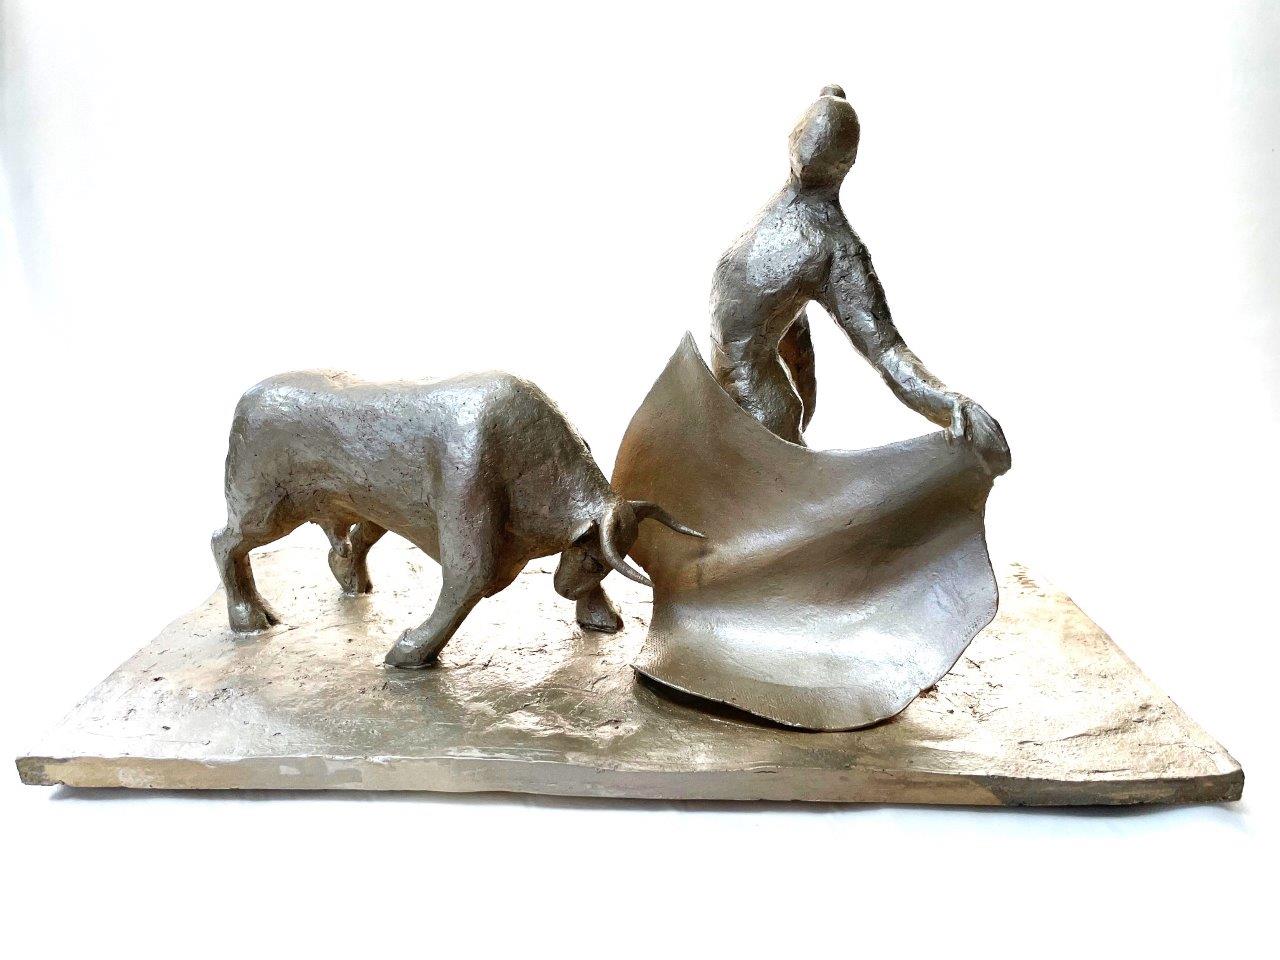 Matador & Bull
Clay Sculpture
William Mulligan
9 X 15 X 7.5
Painted stoneware